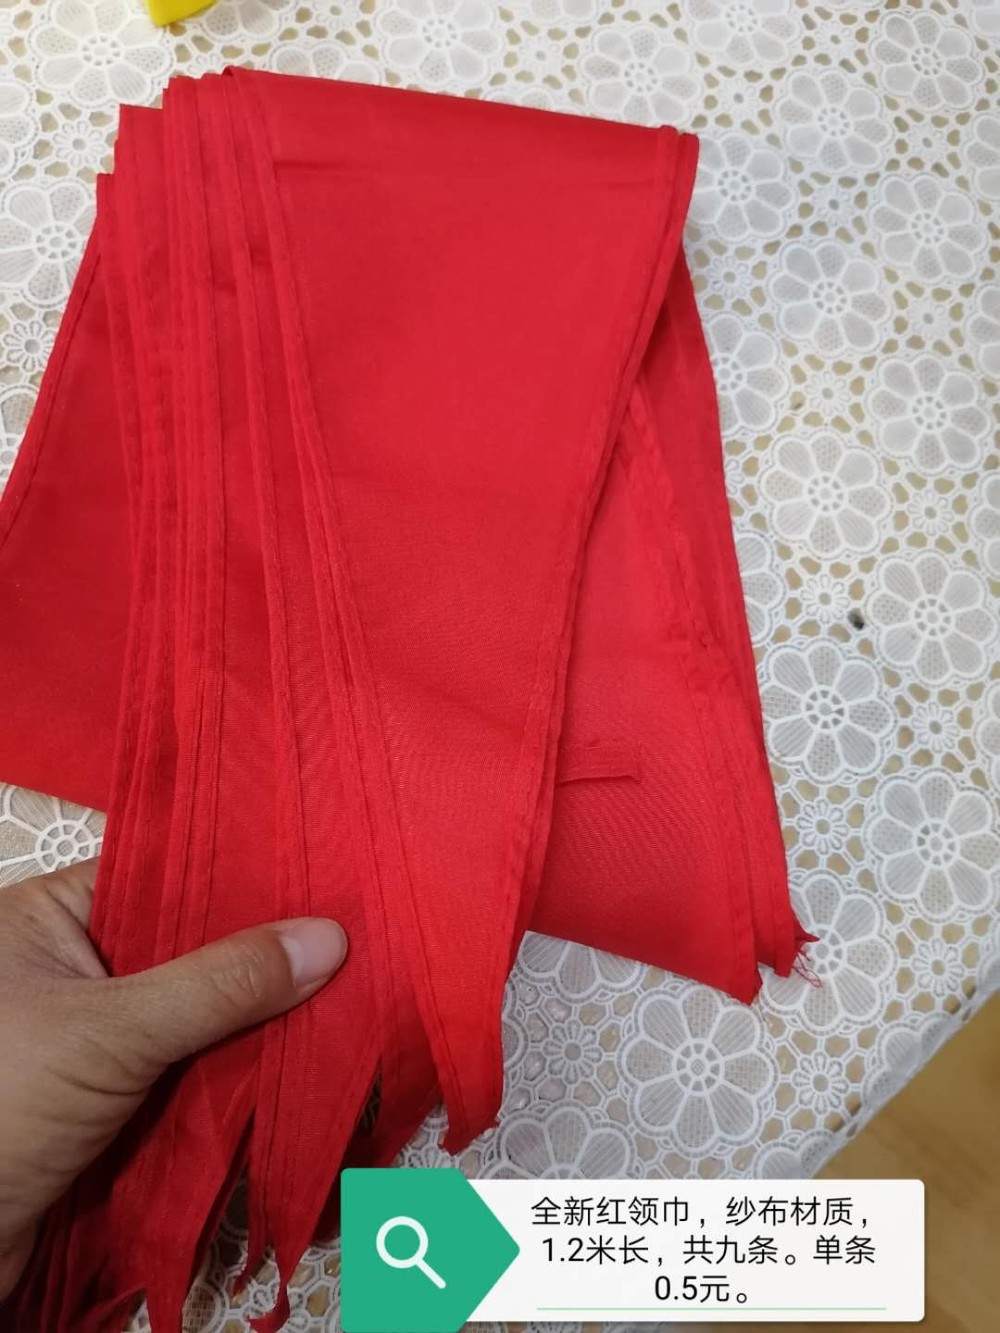 红领巾.jpg